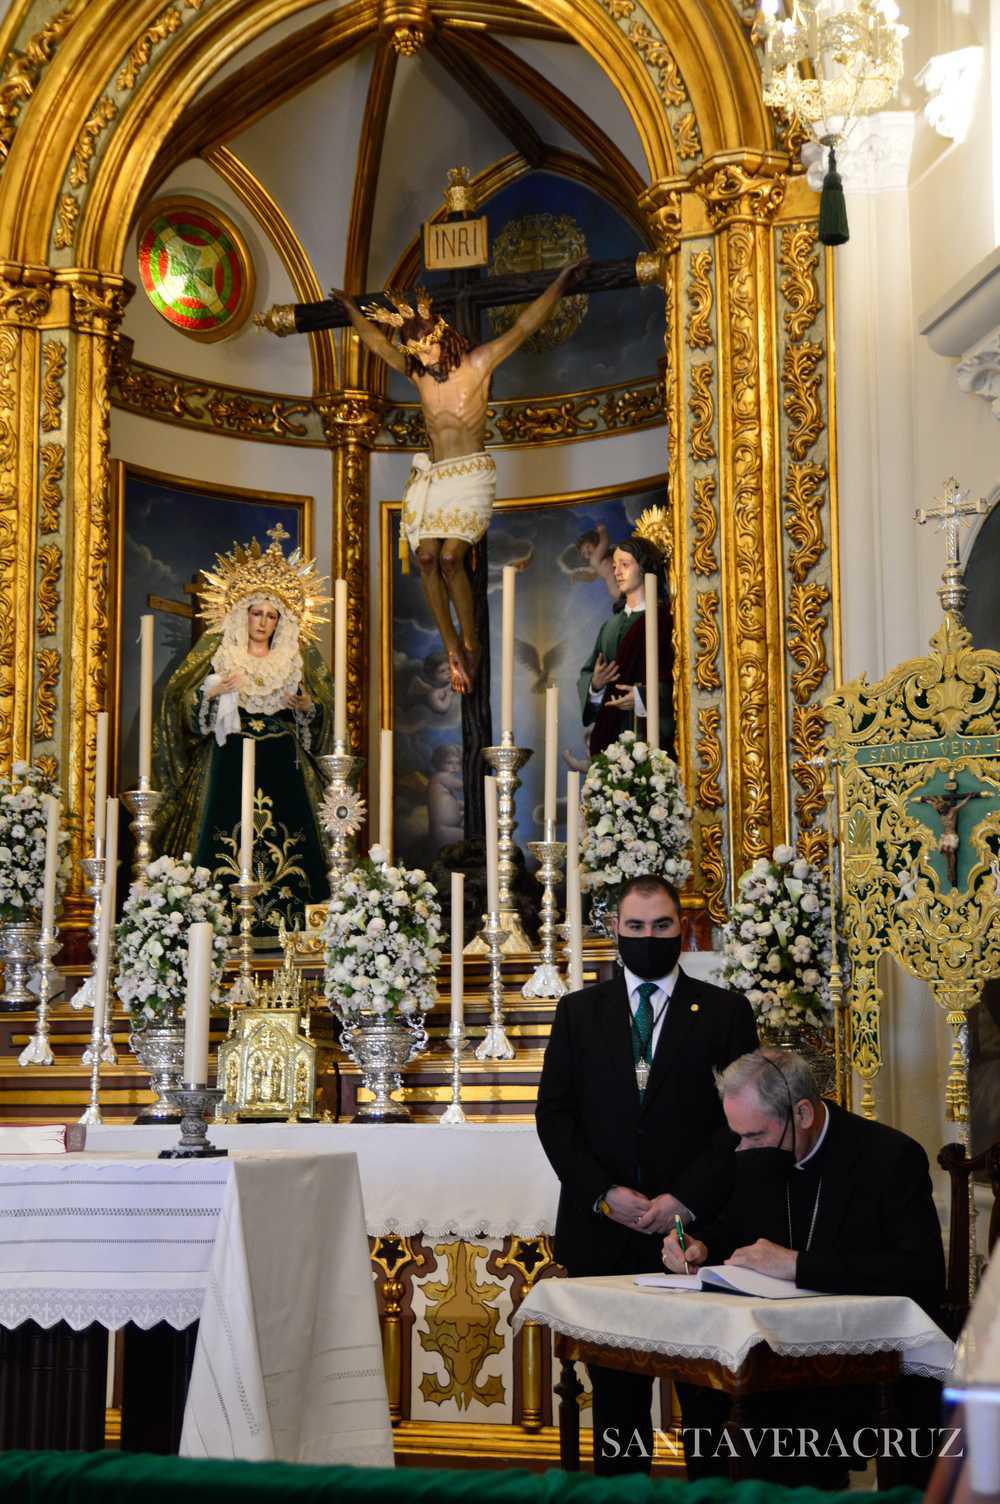 Visita del Obispo Excmo. y Rvdo. Monseñor D. Jesús Catalá, "Imagen y poesía, 100 años de historia" y Cabildo Extraordinario del Día de la Cruz